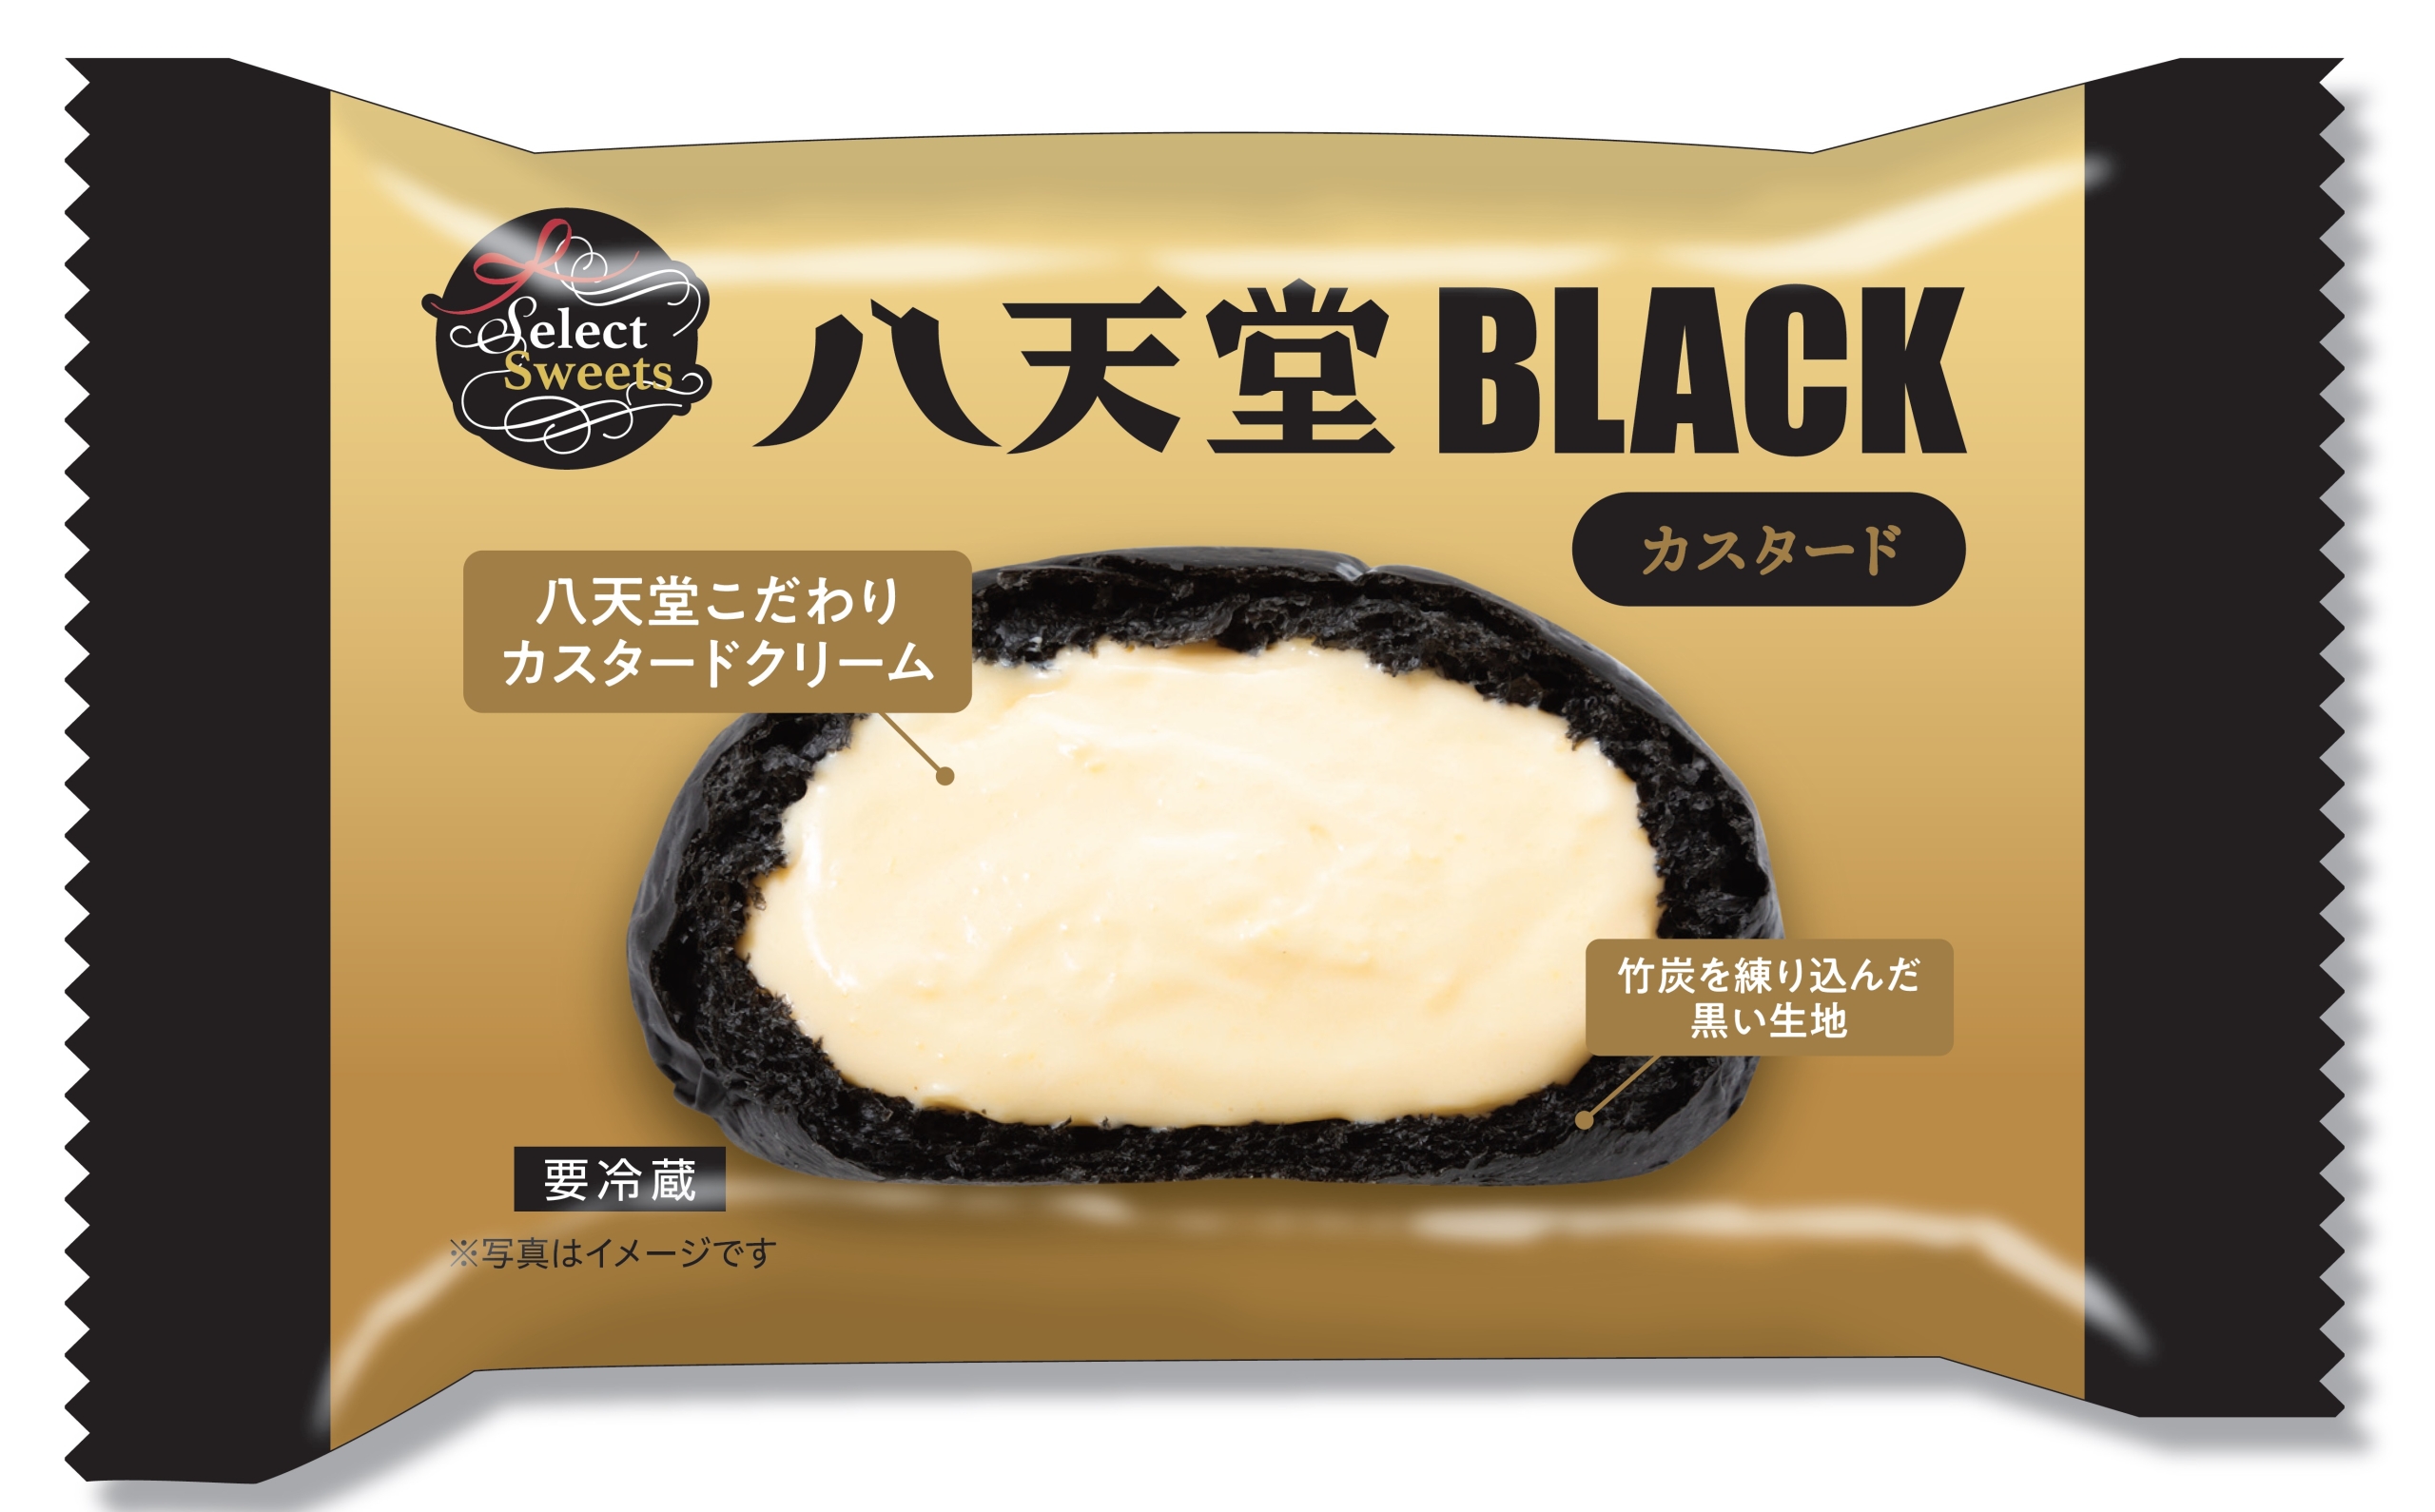 八天堂BLACK(イオンブラックフライデー限定商品)